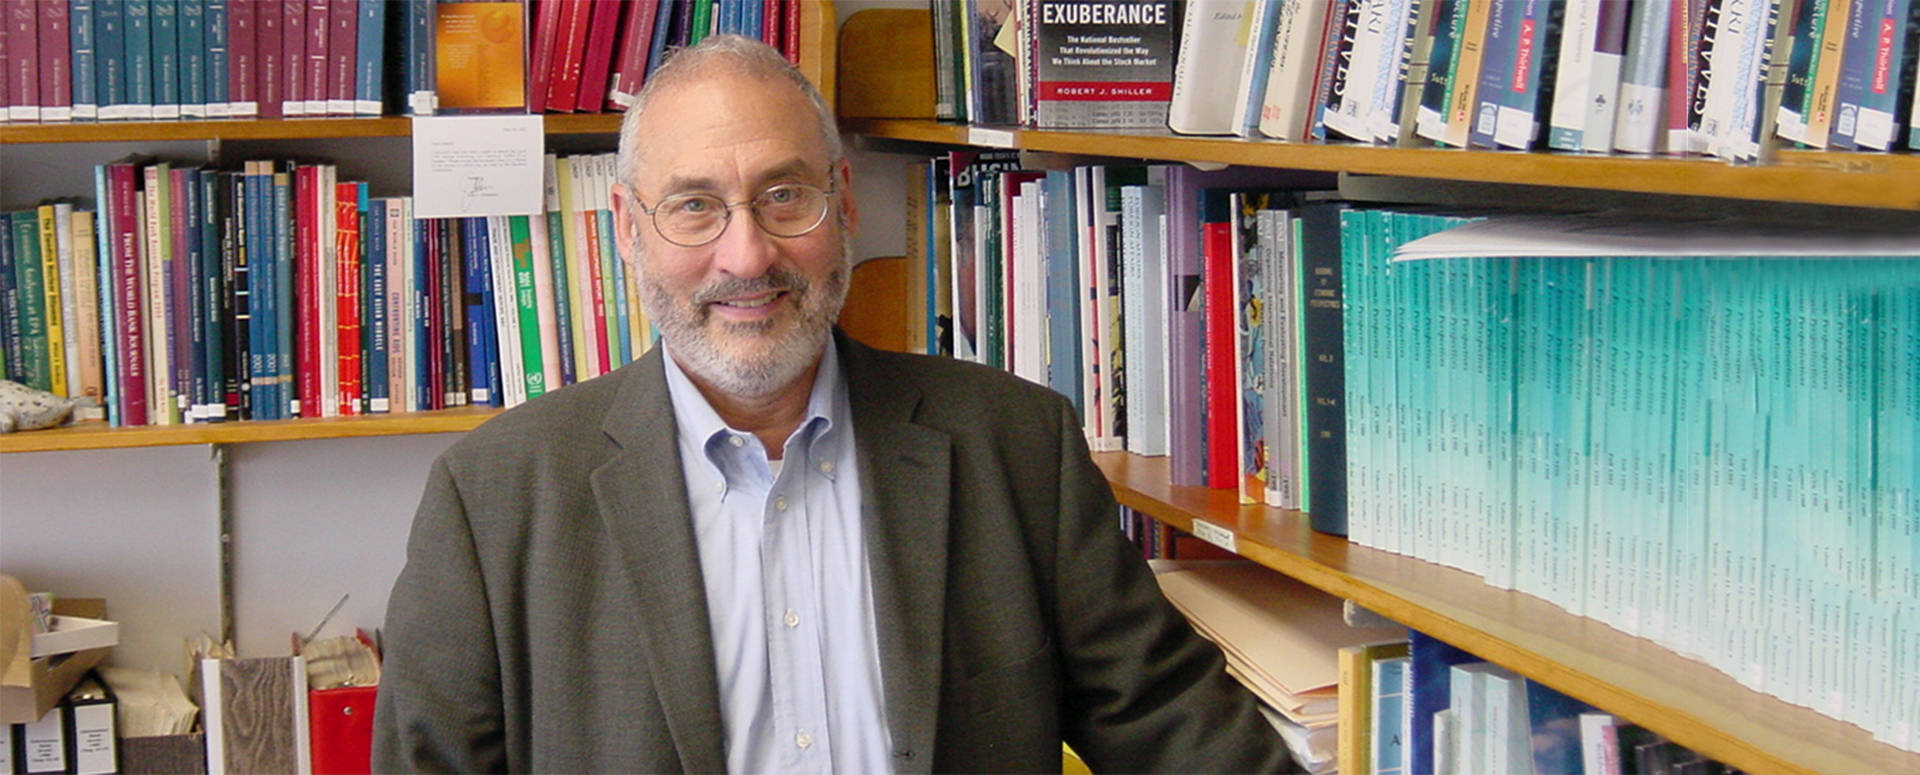 Joseph  Stiglitz